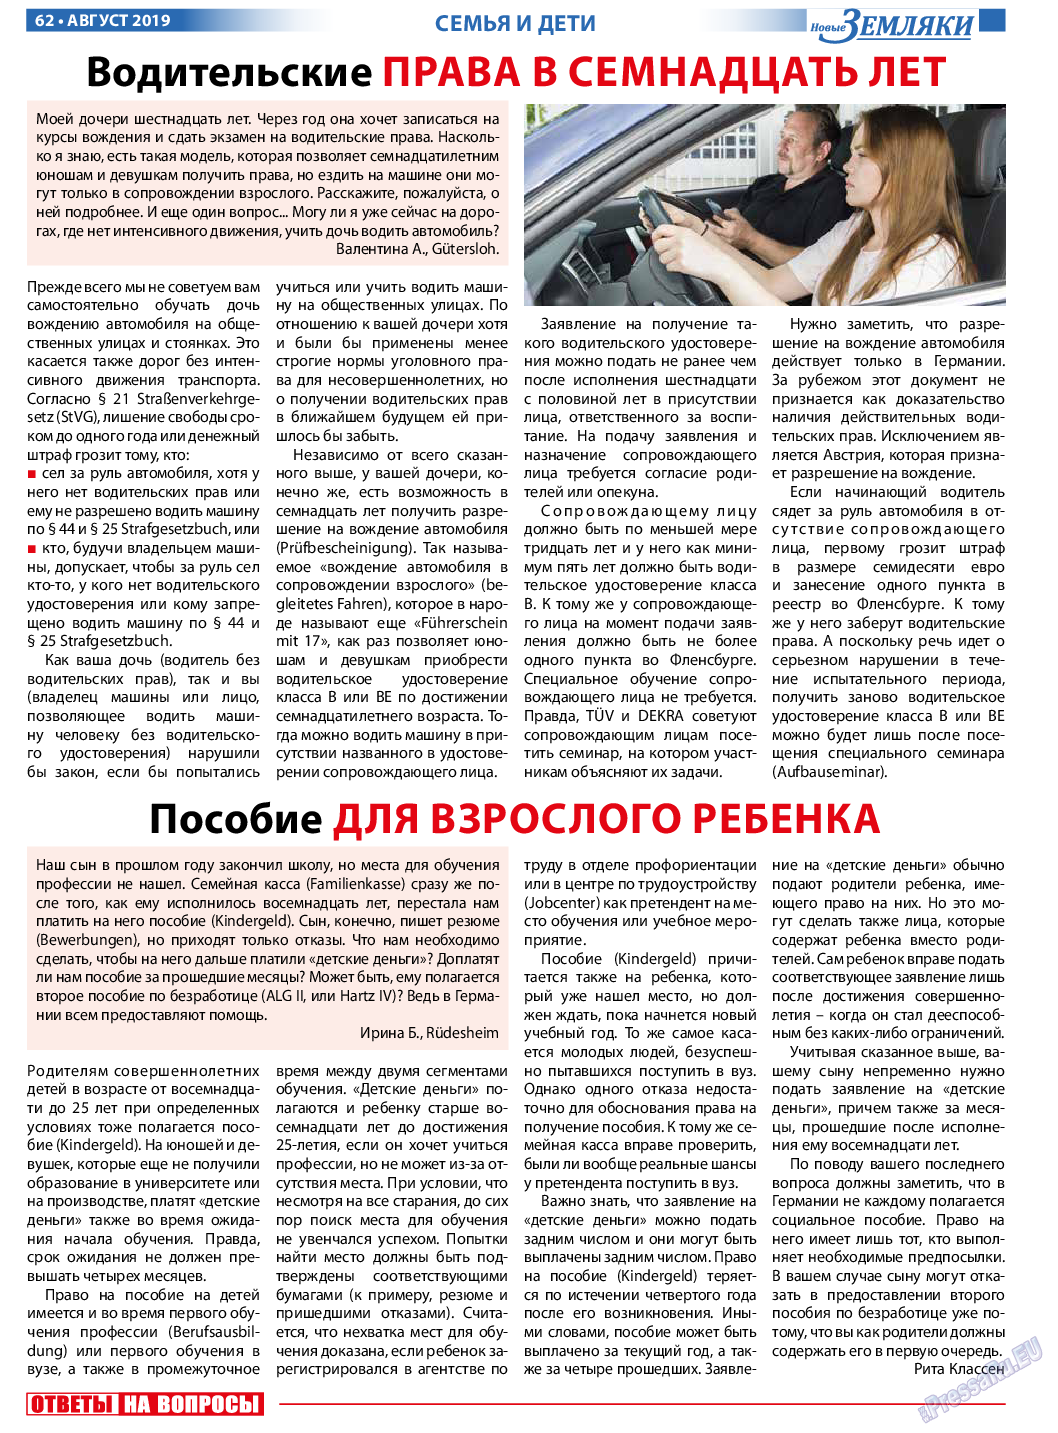 Новые Земляки, газета. 2019 №8 стр.62